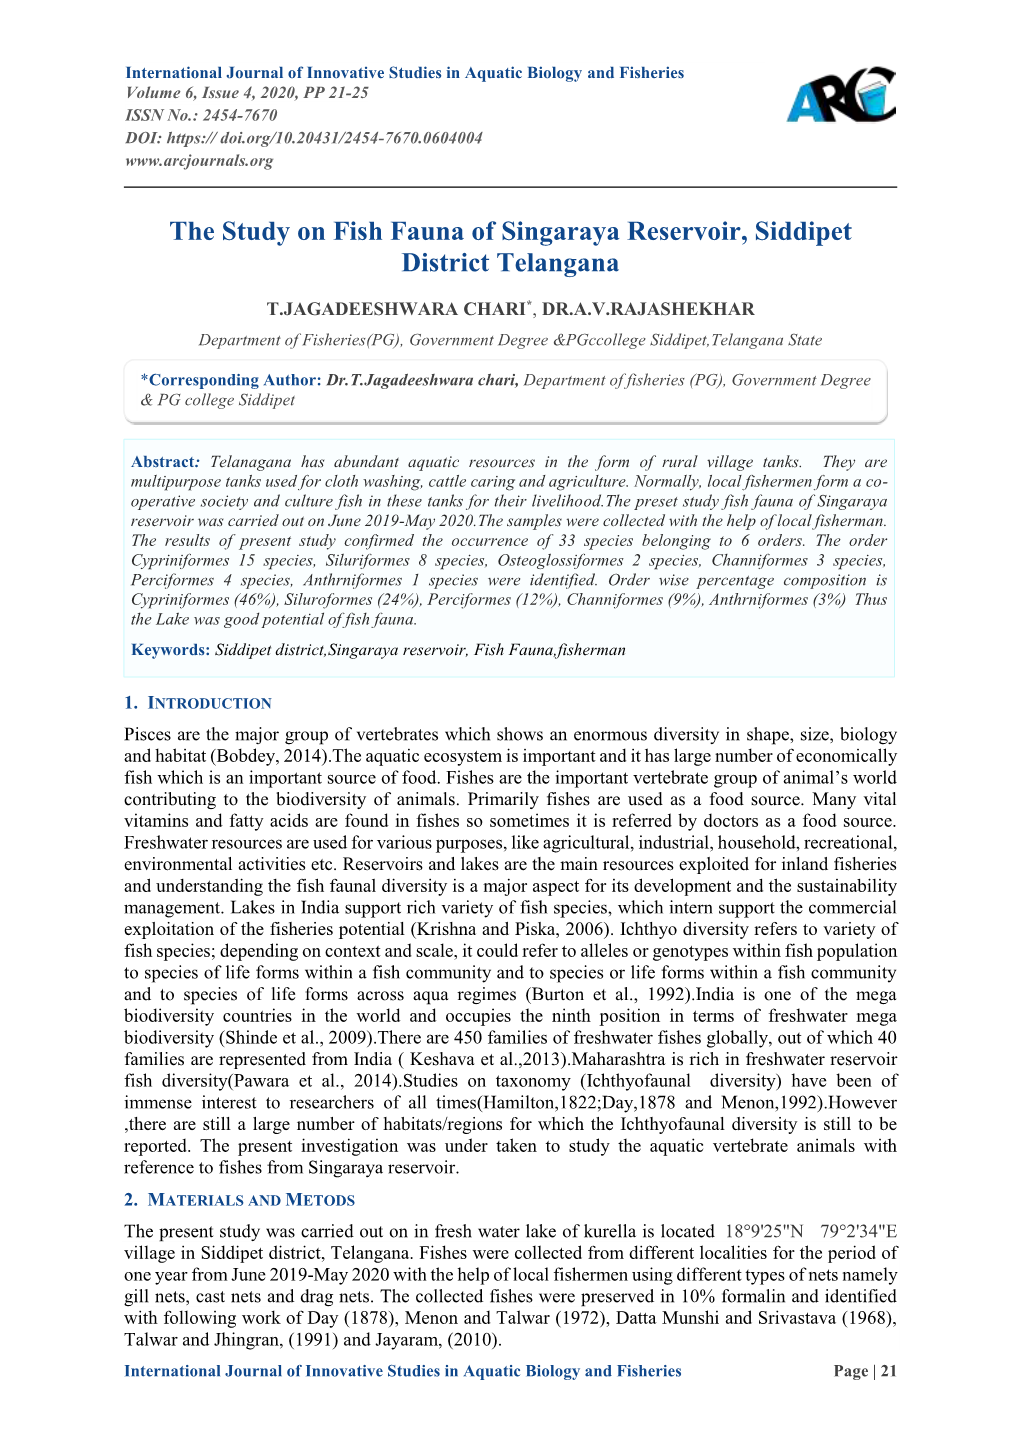 The Study on Fish Fauna of Singaraya Reservoir, Siddipet District Telangana